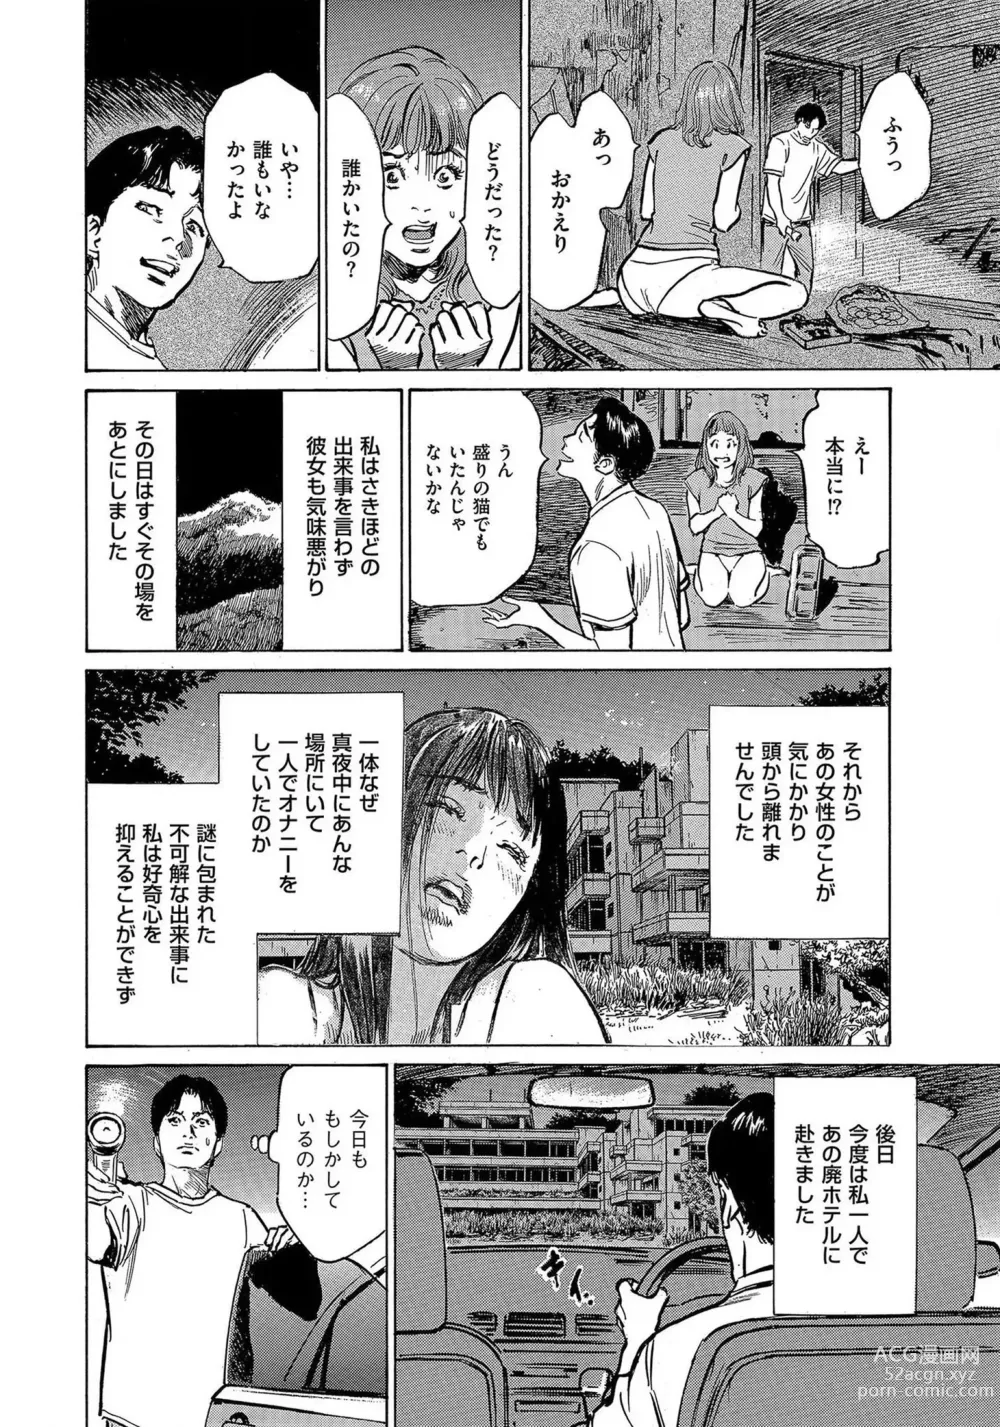 Page 25 of manga Saikou ni Toroketa Honki de Honto no Hanashi 16 episodes